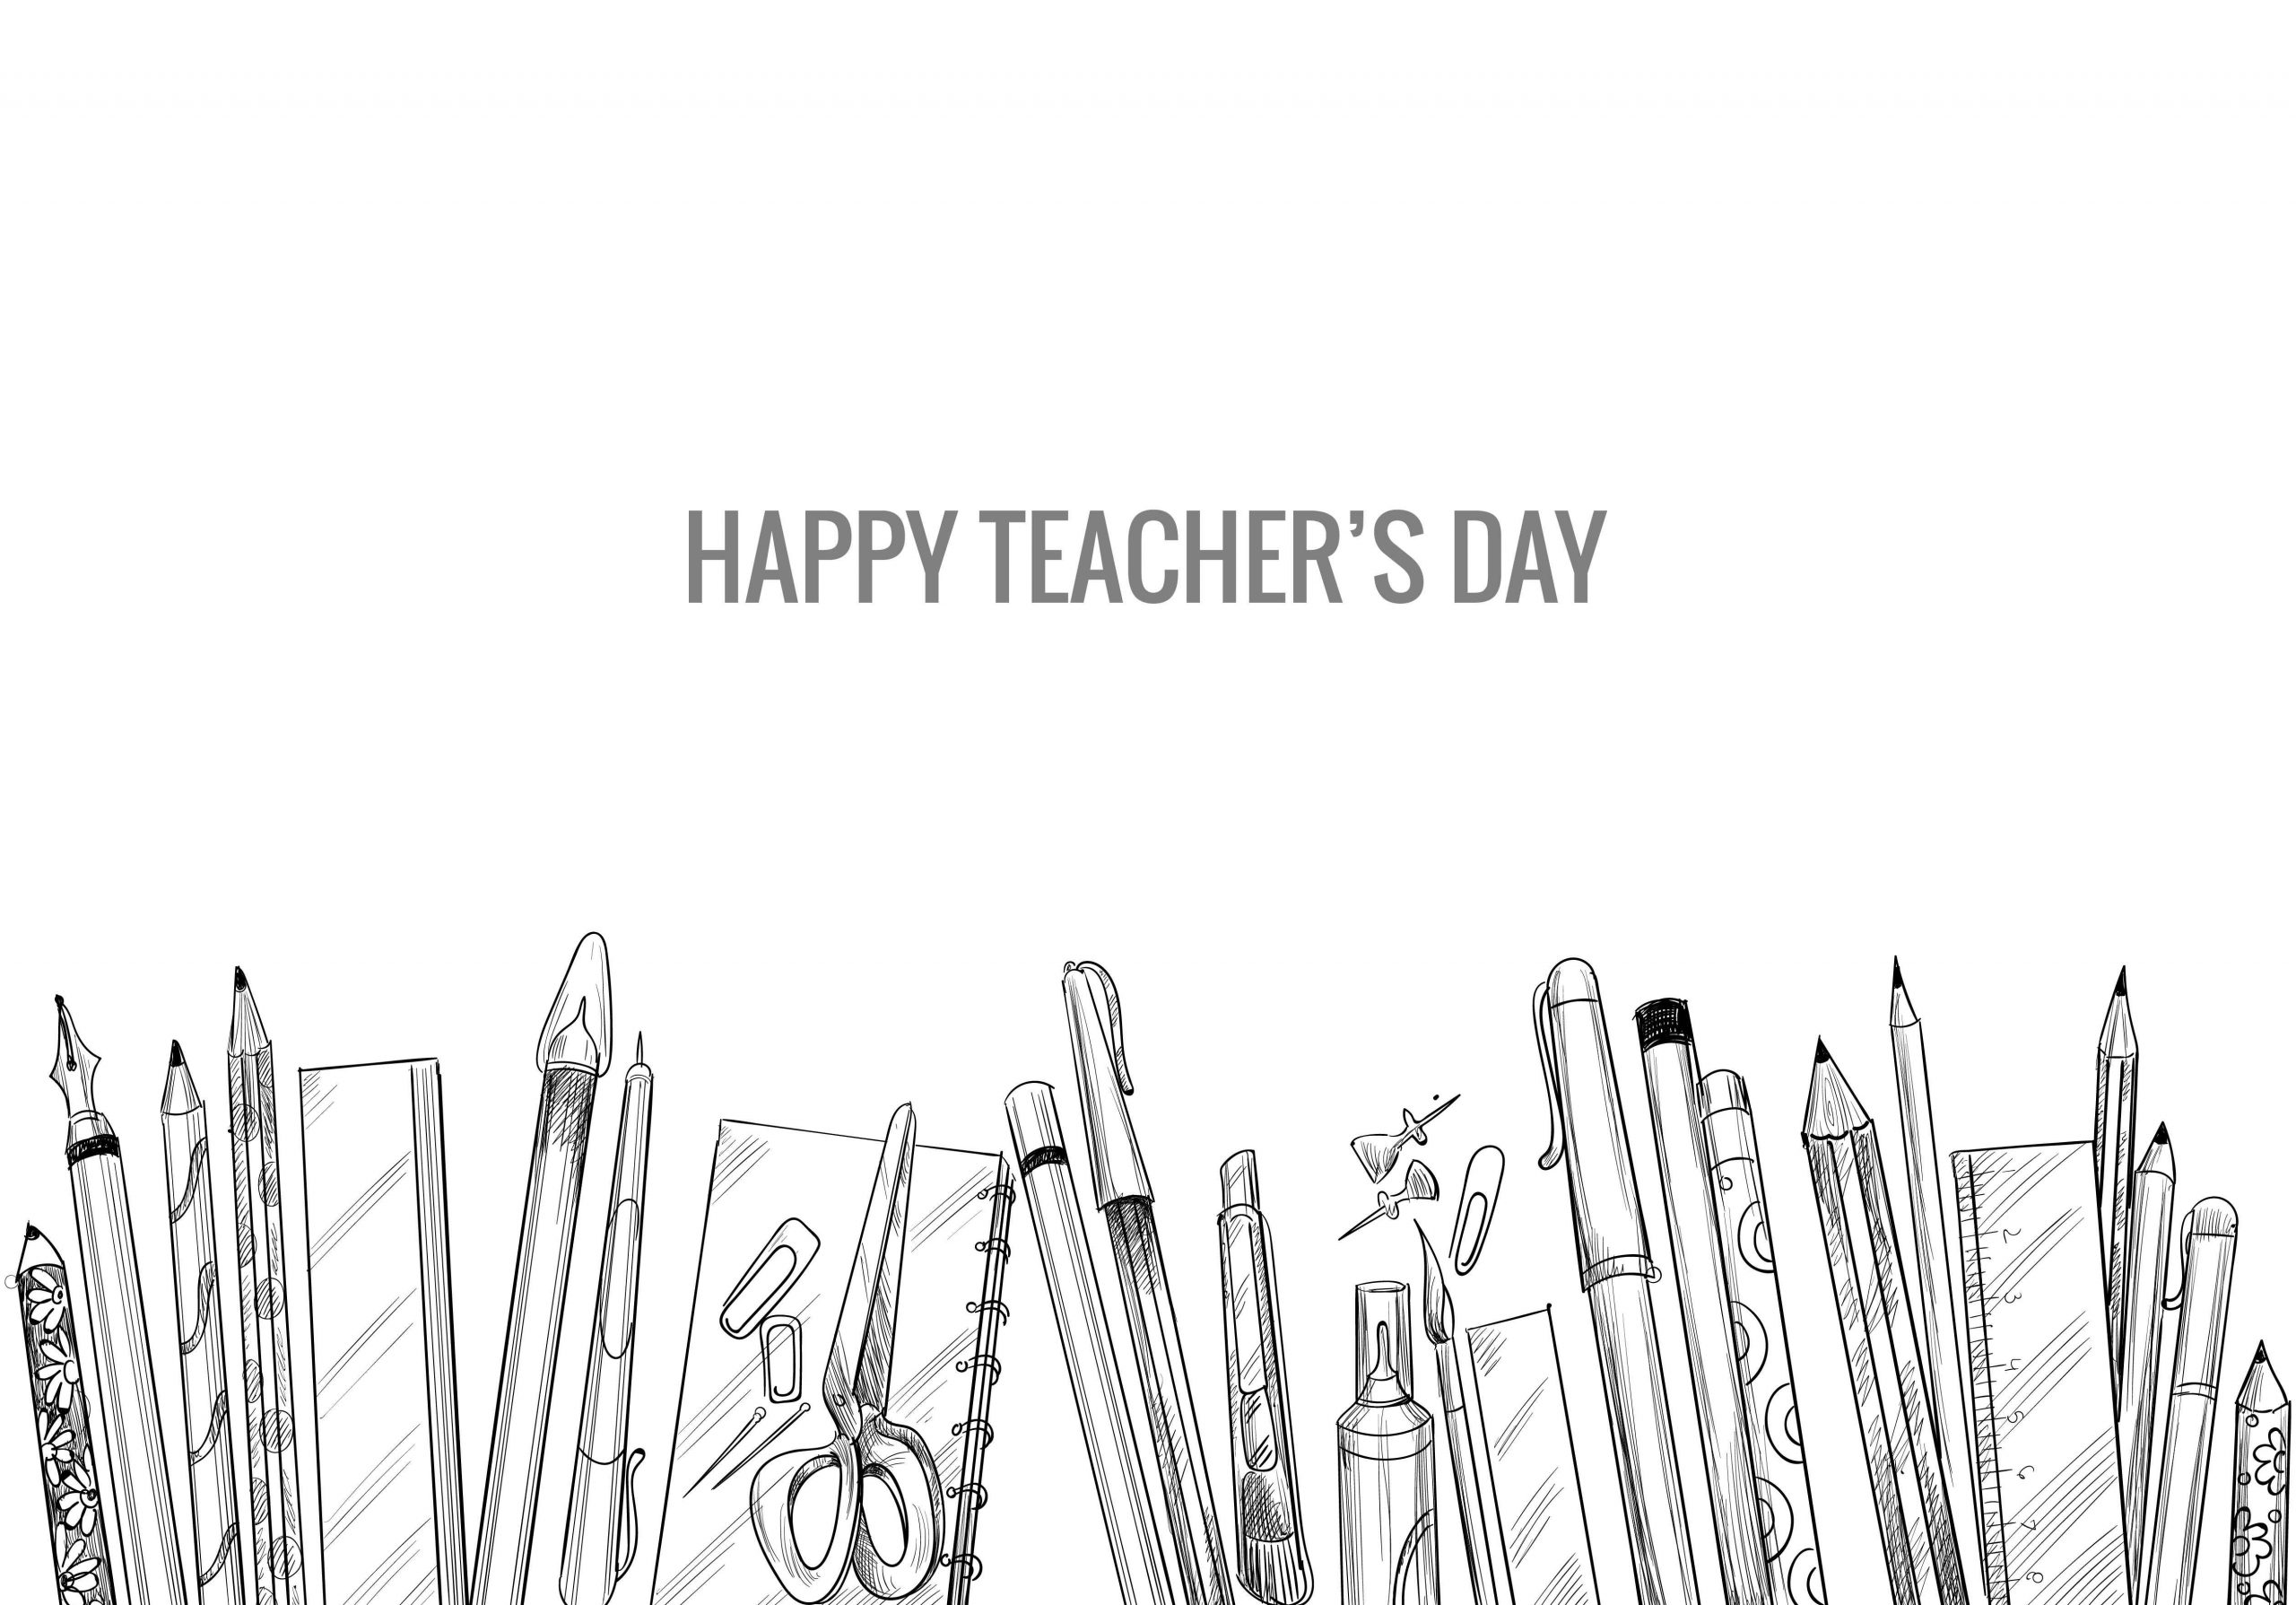 Happy Teacher's Day pics